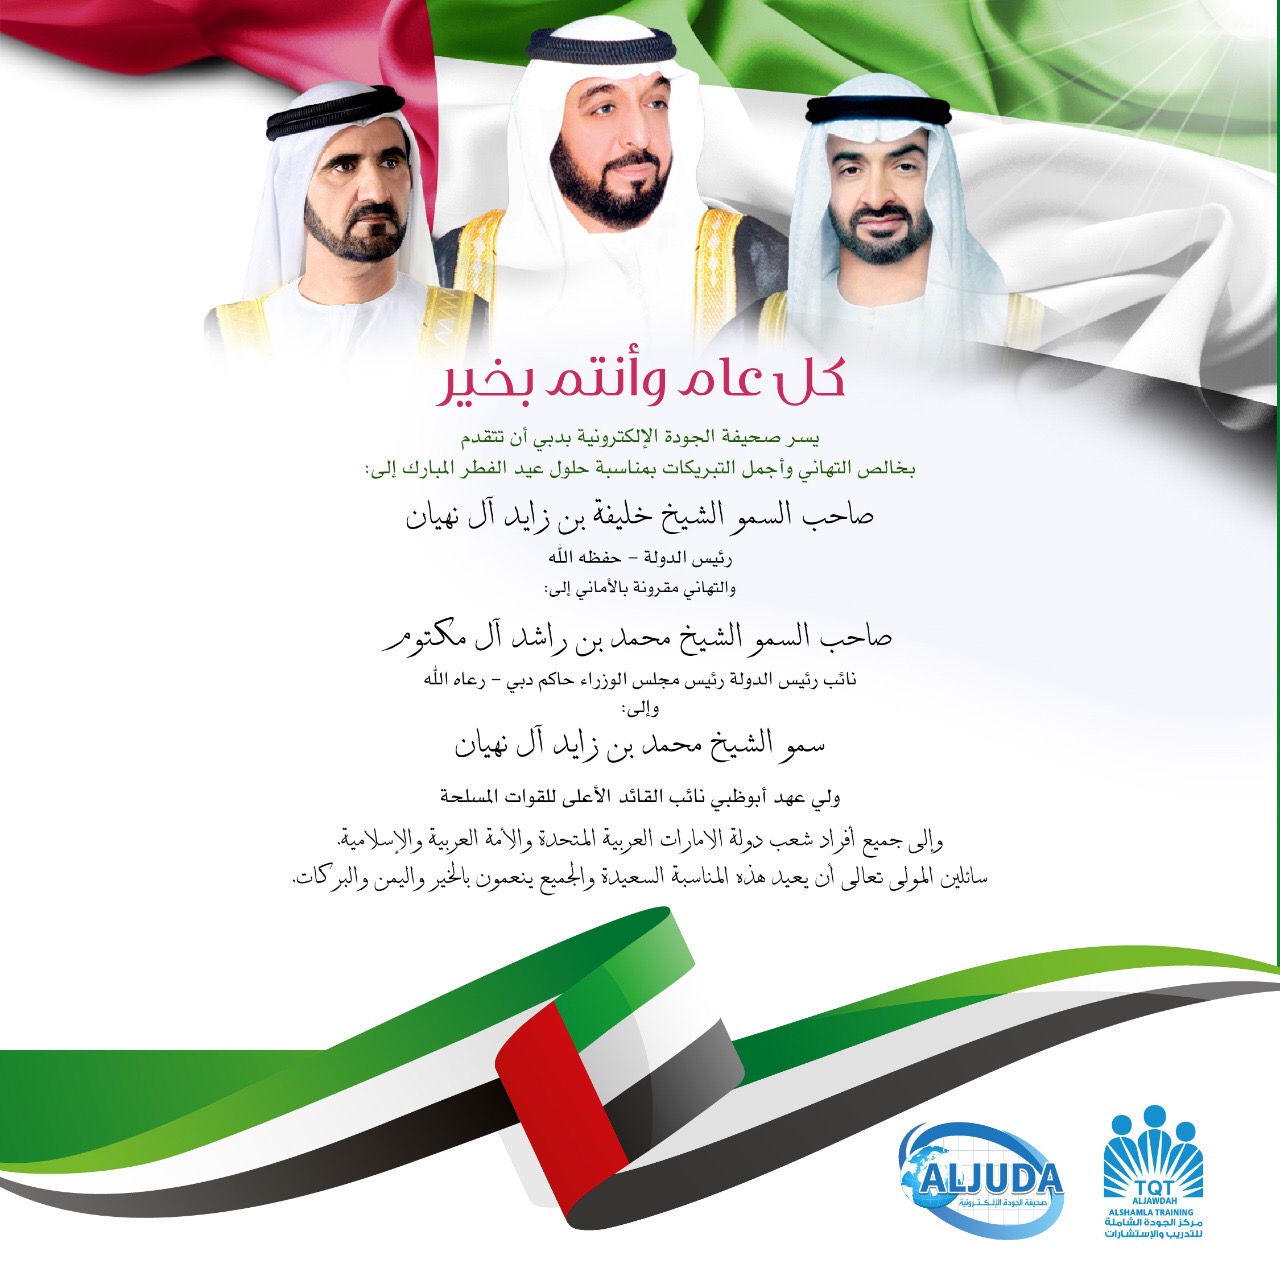 صحيفة الجودة الالكترونية تهنئ قيادة وشعب الامارات بمناسبة عيد الفطر المبارك